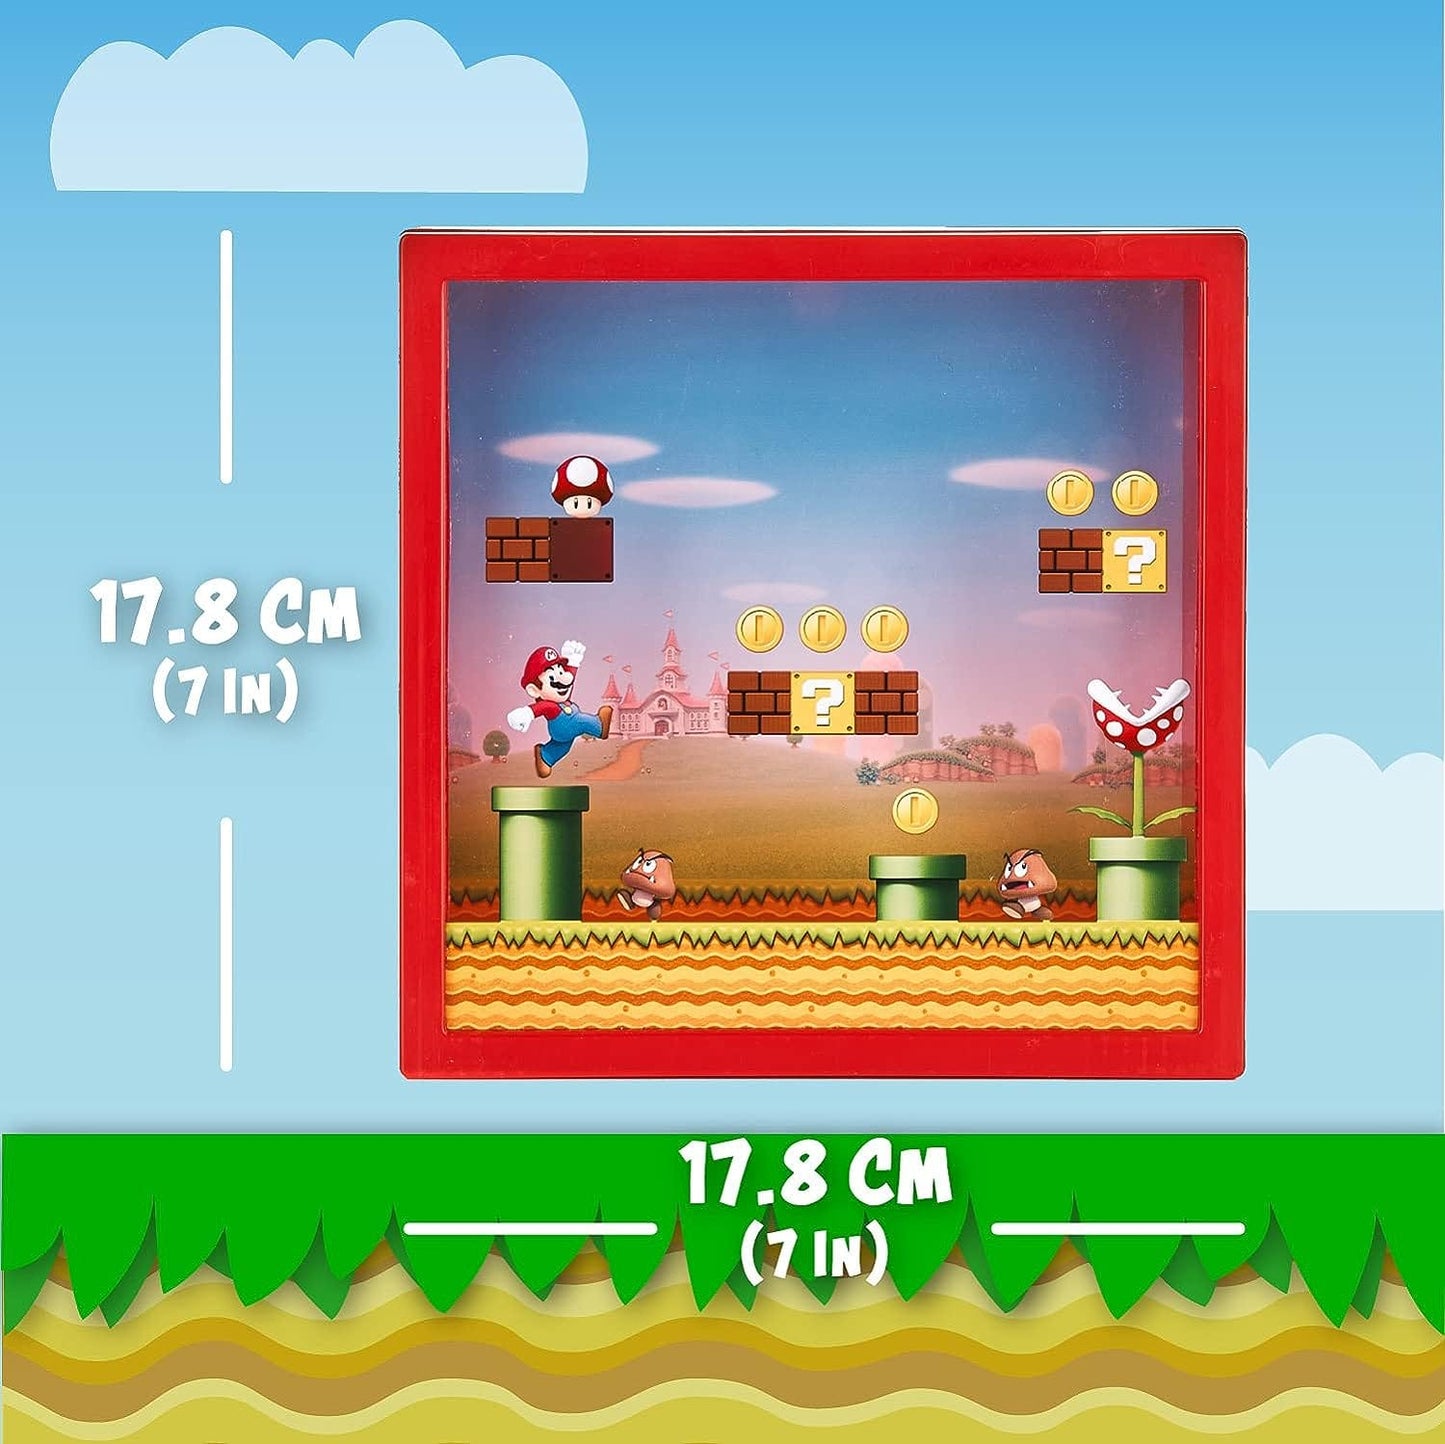 Paladone Bank Super Mario Bros. Arcade Money Box PP6351NNV2